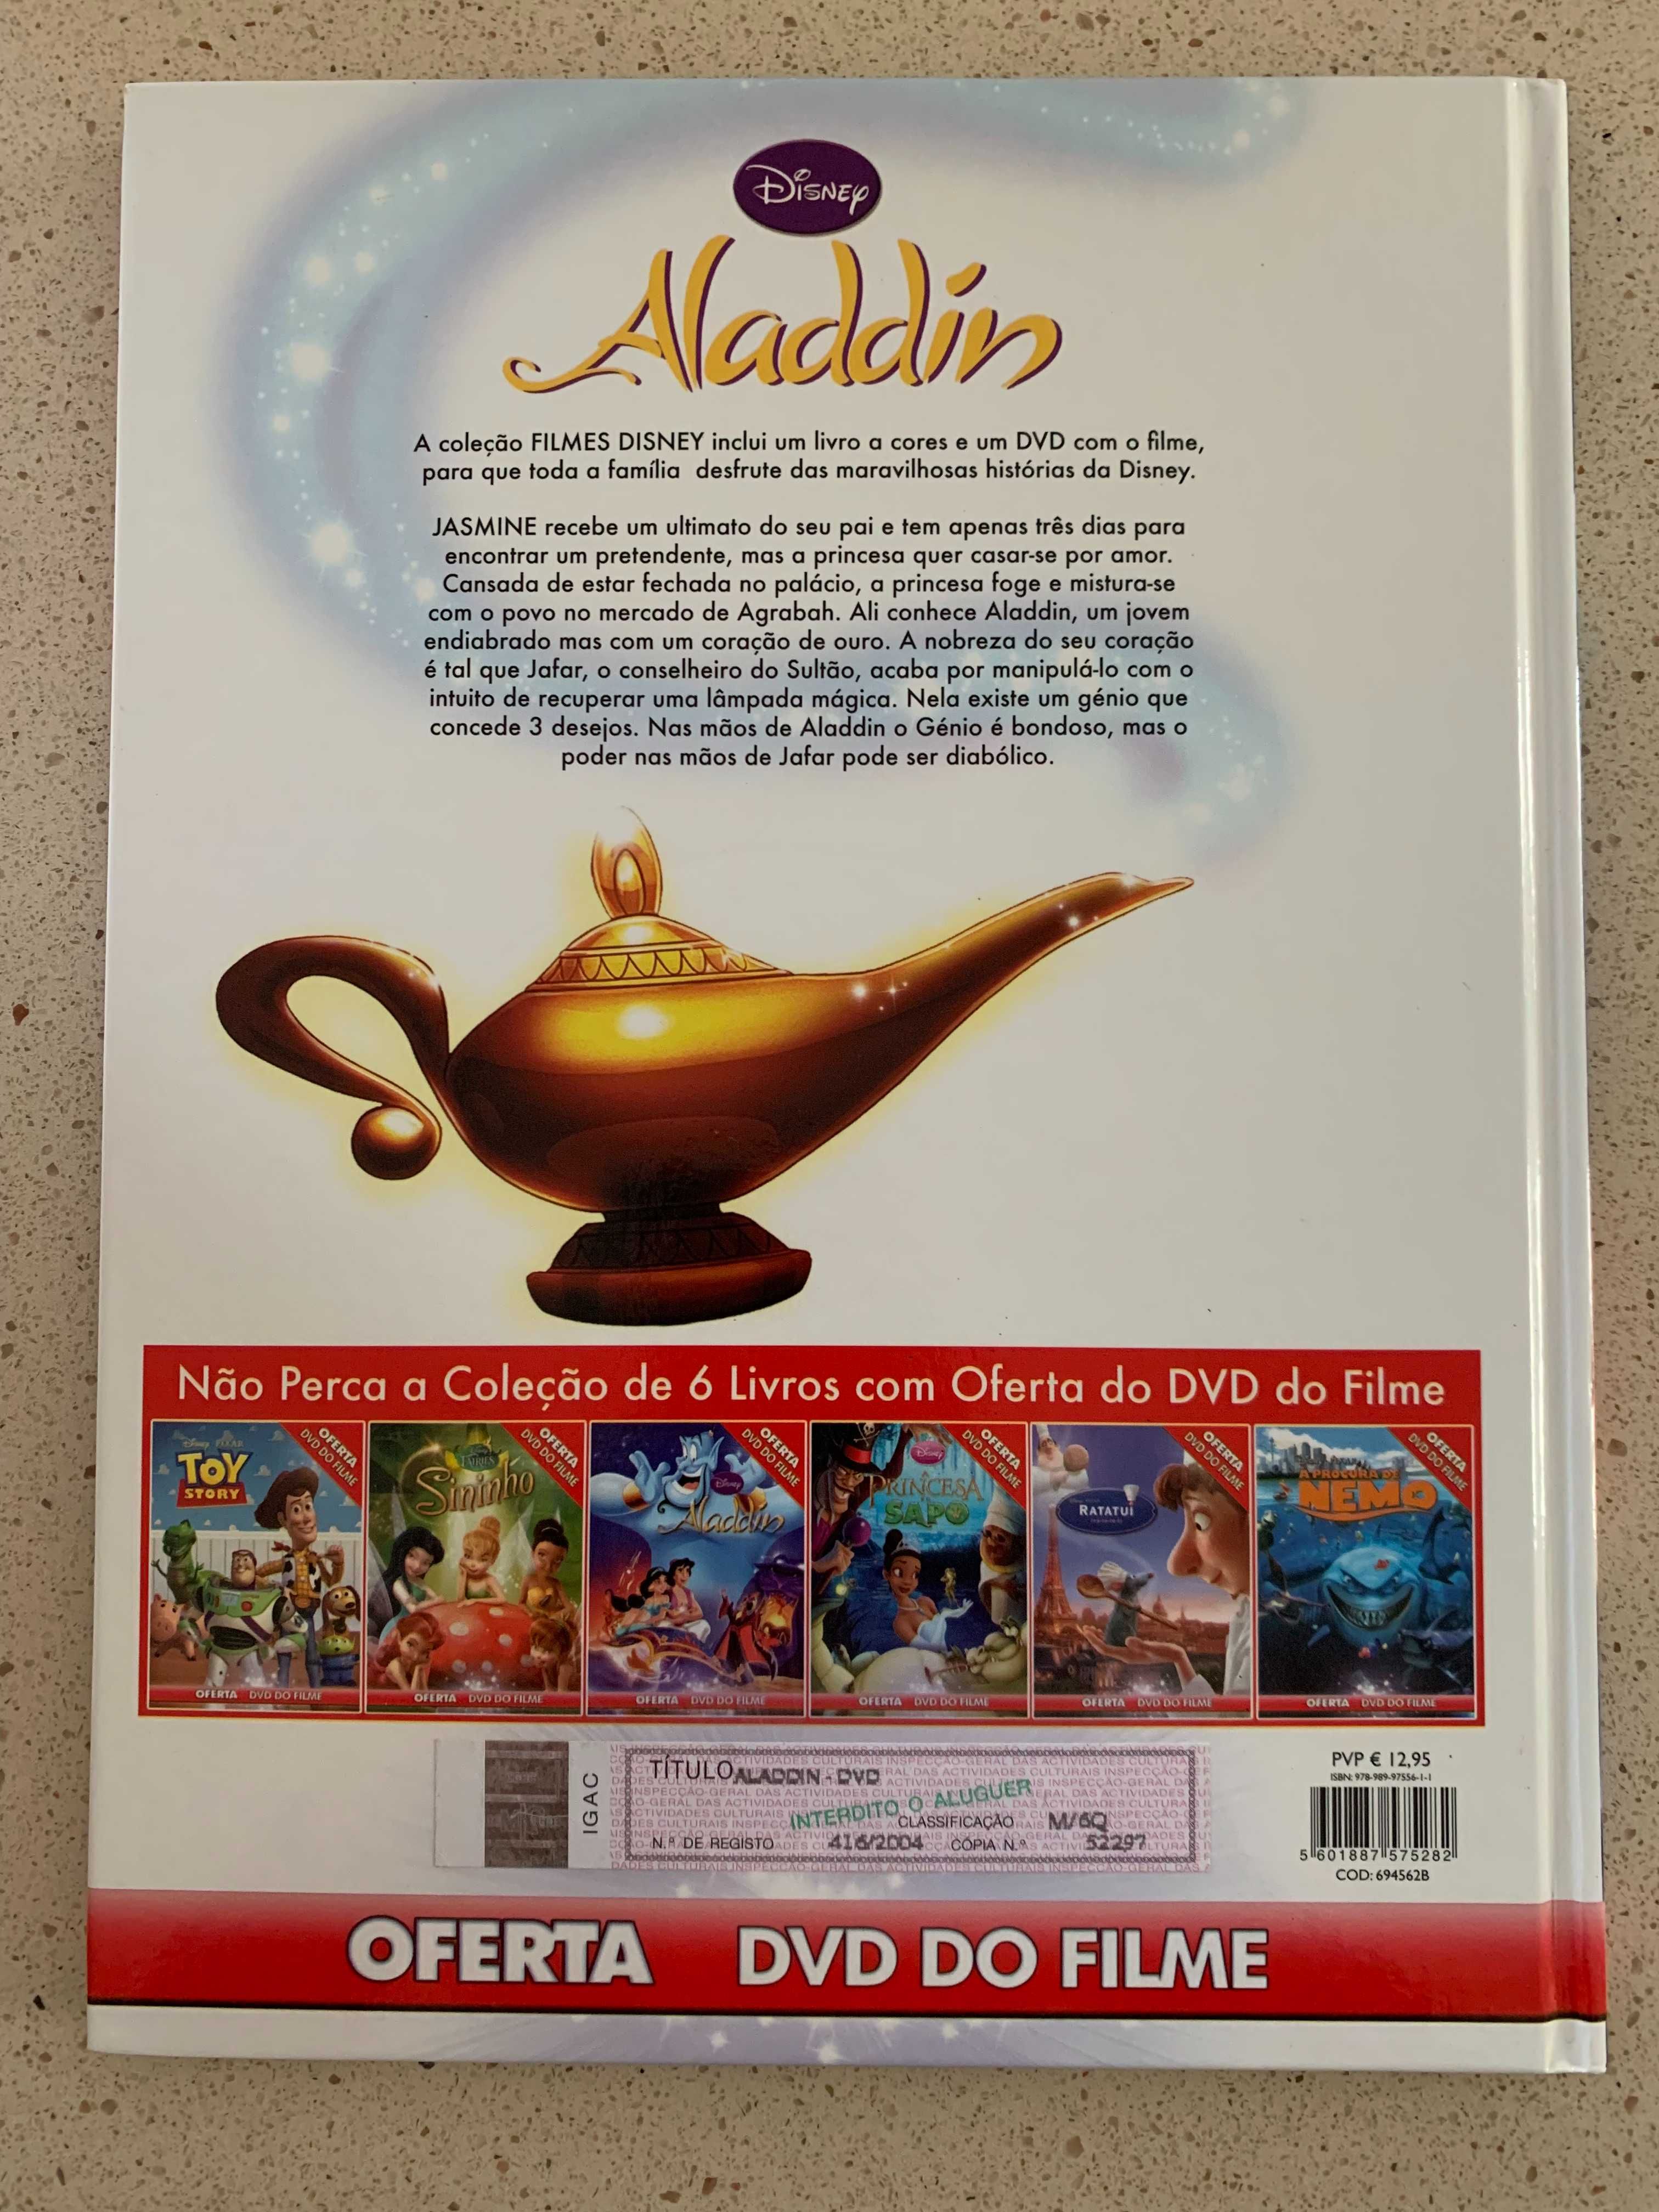 Livro "Aladdin" da Disney - Edição Especial (Livro + DVD)